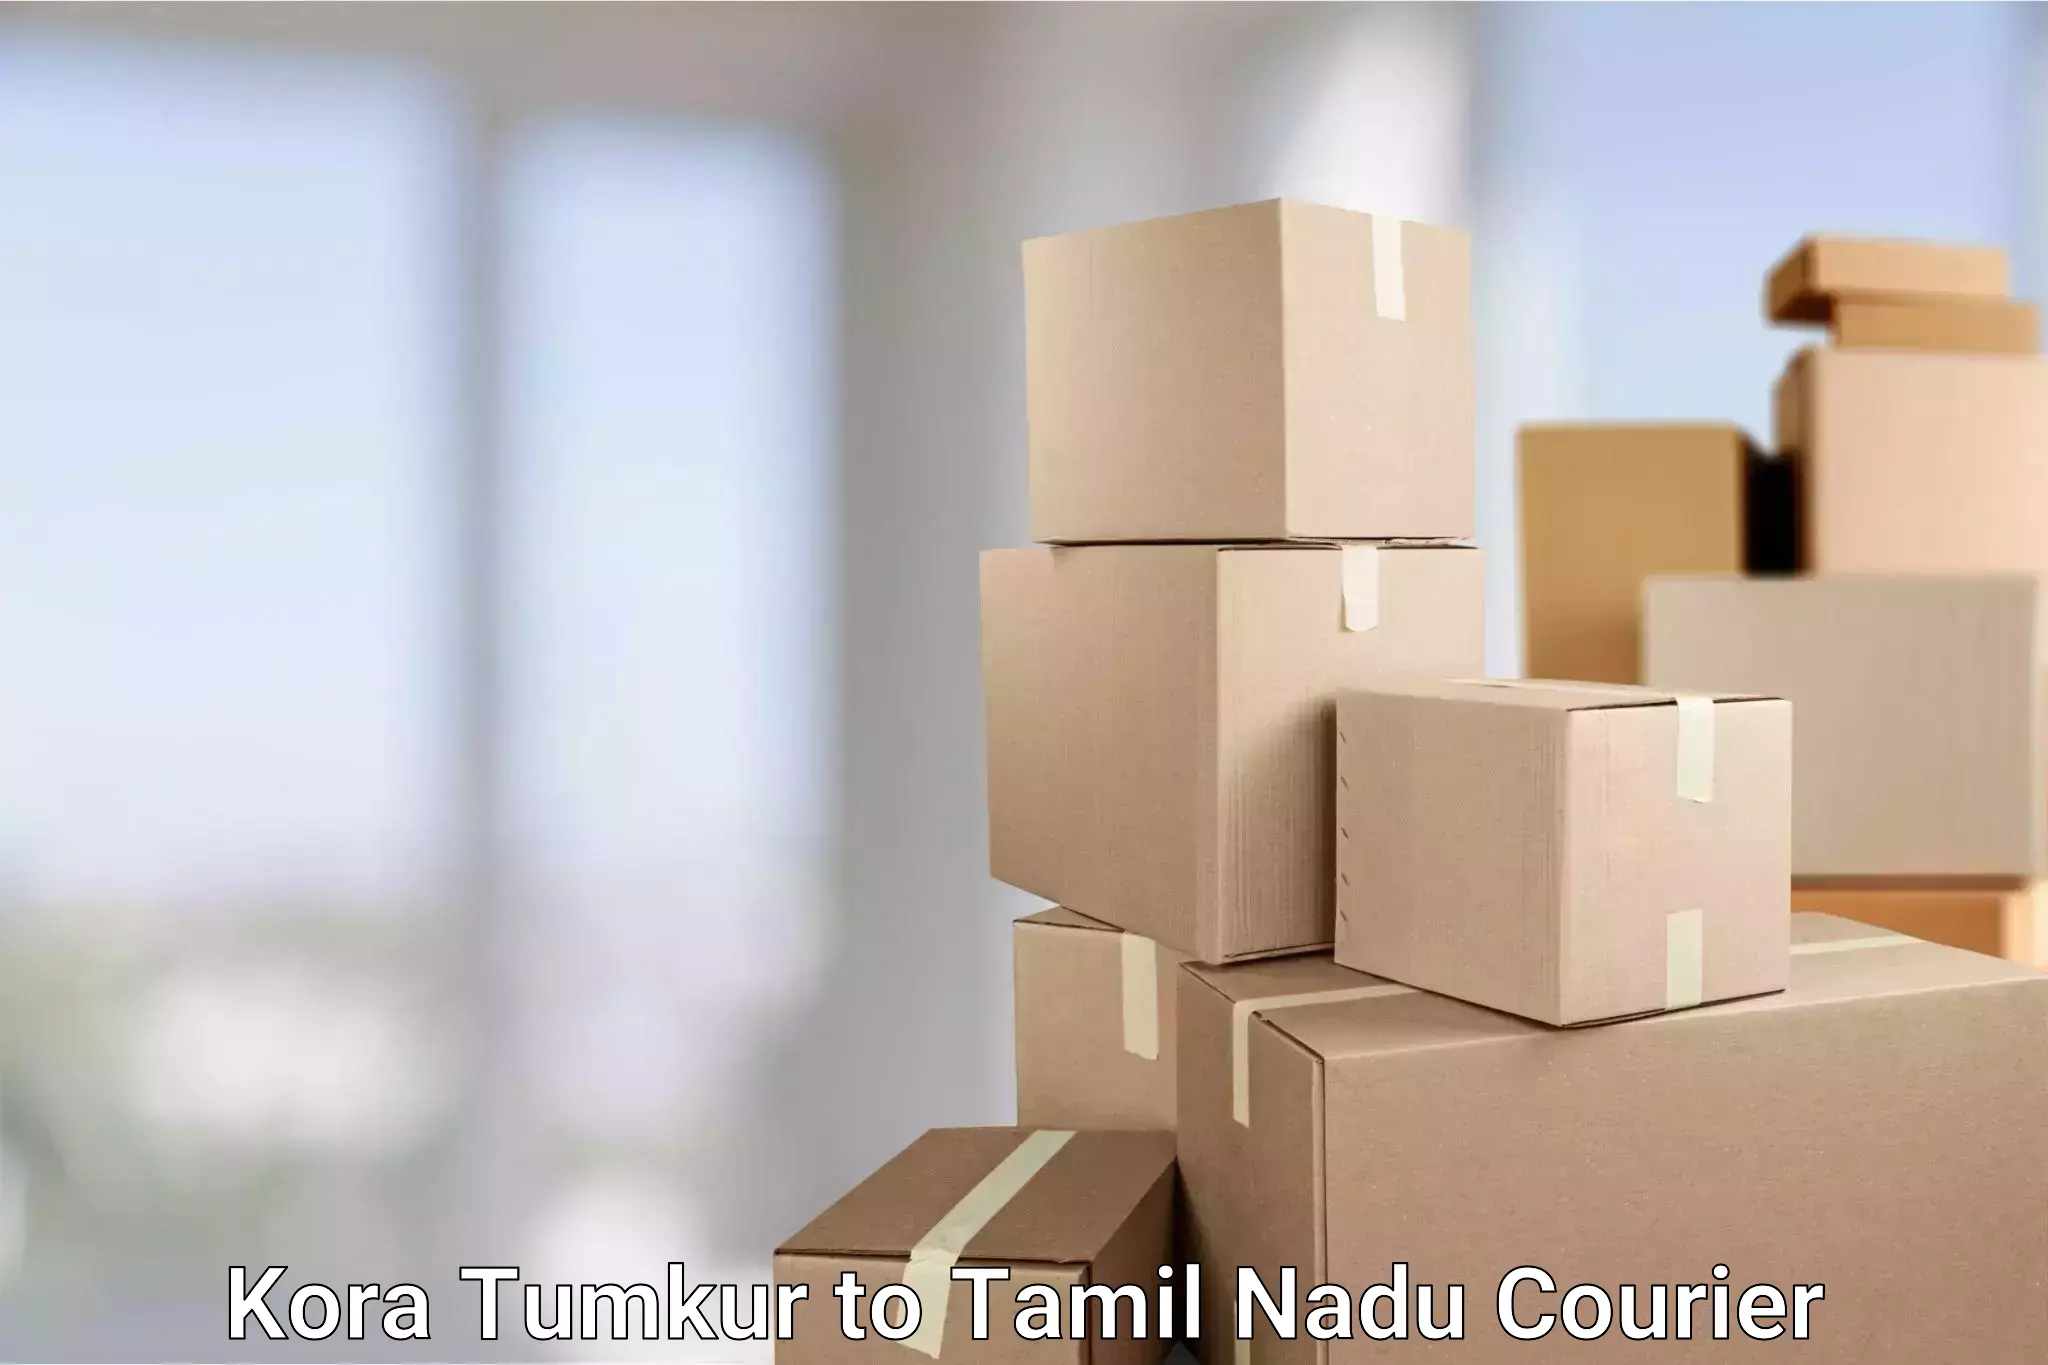 Full-service courier options Kora Tumkur to Muthukulathur